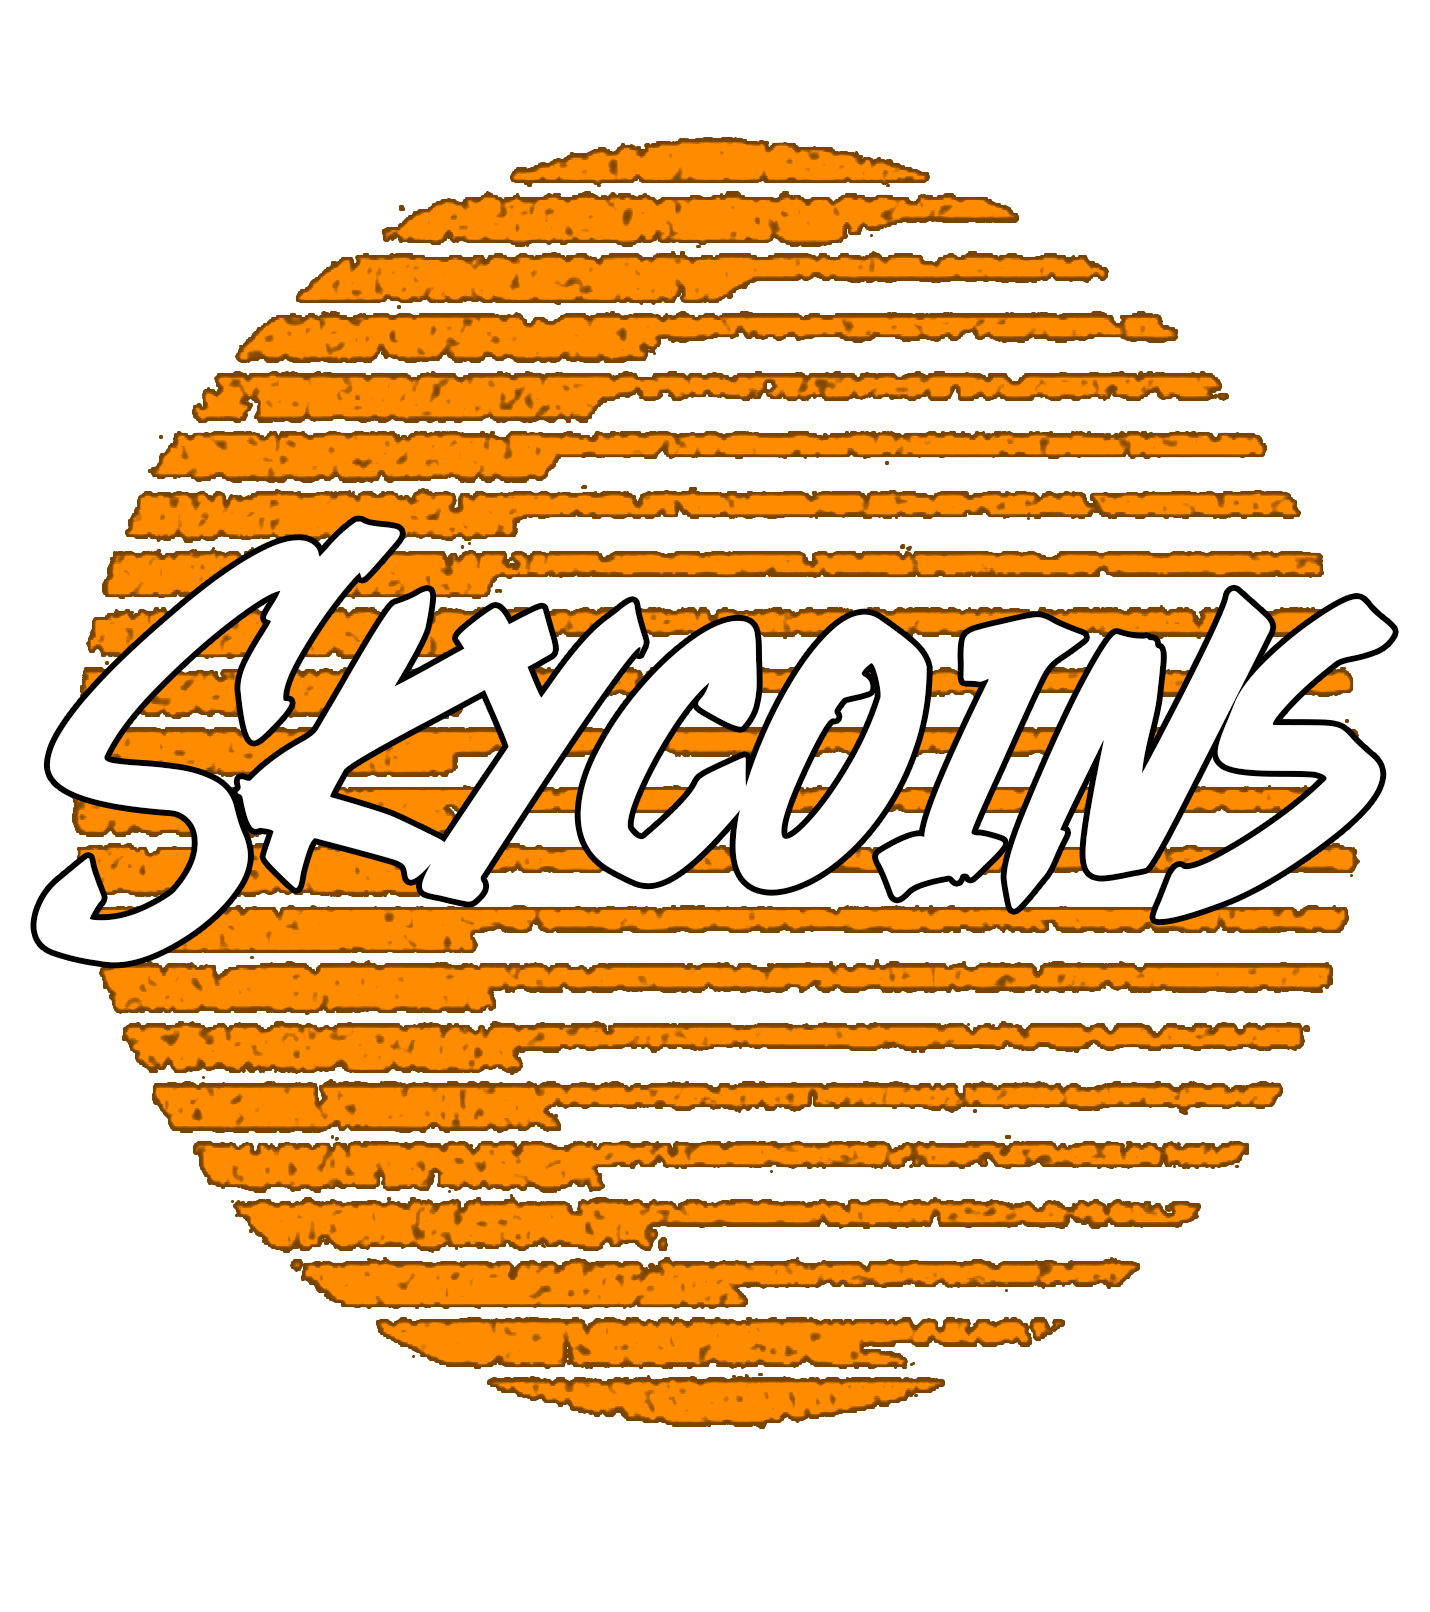 Skycoins - Vikings